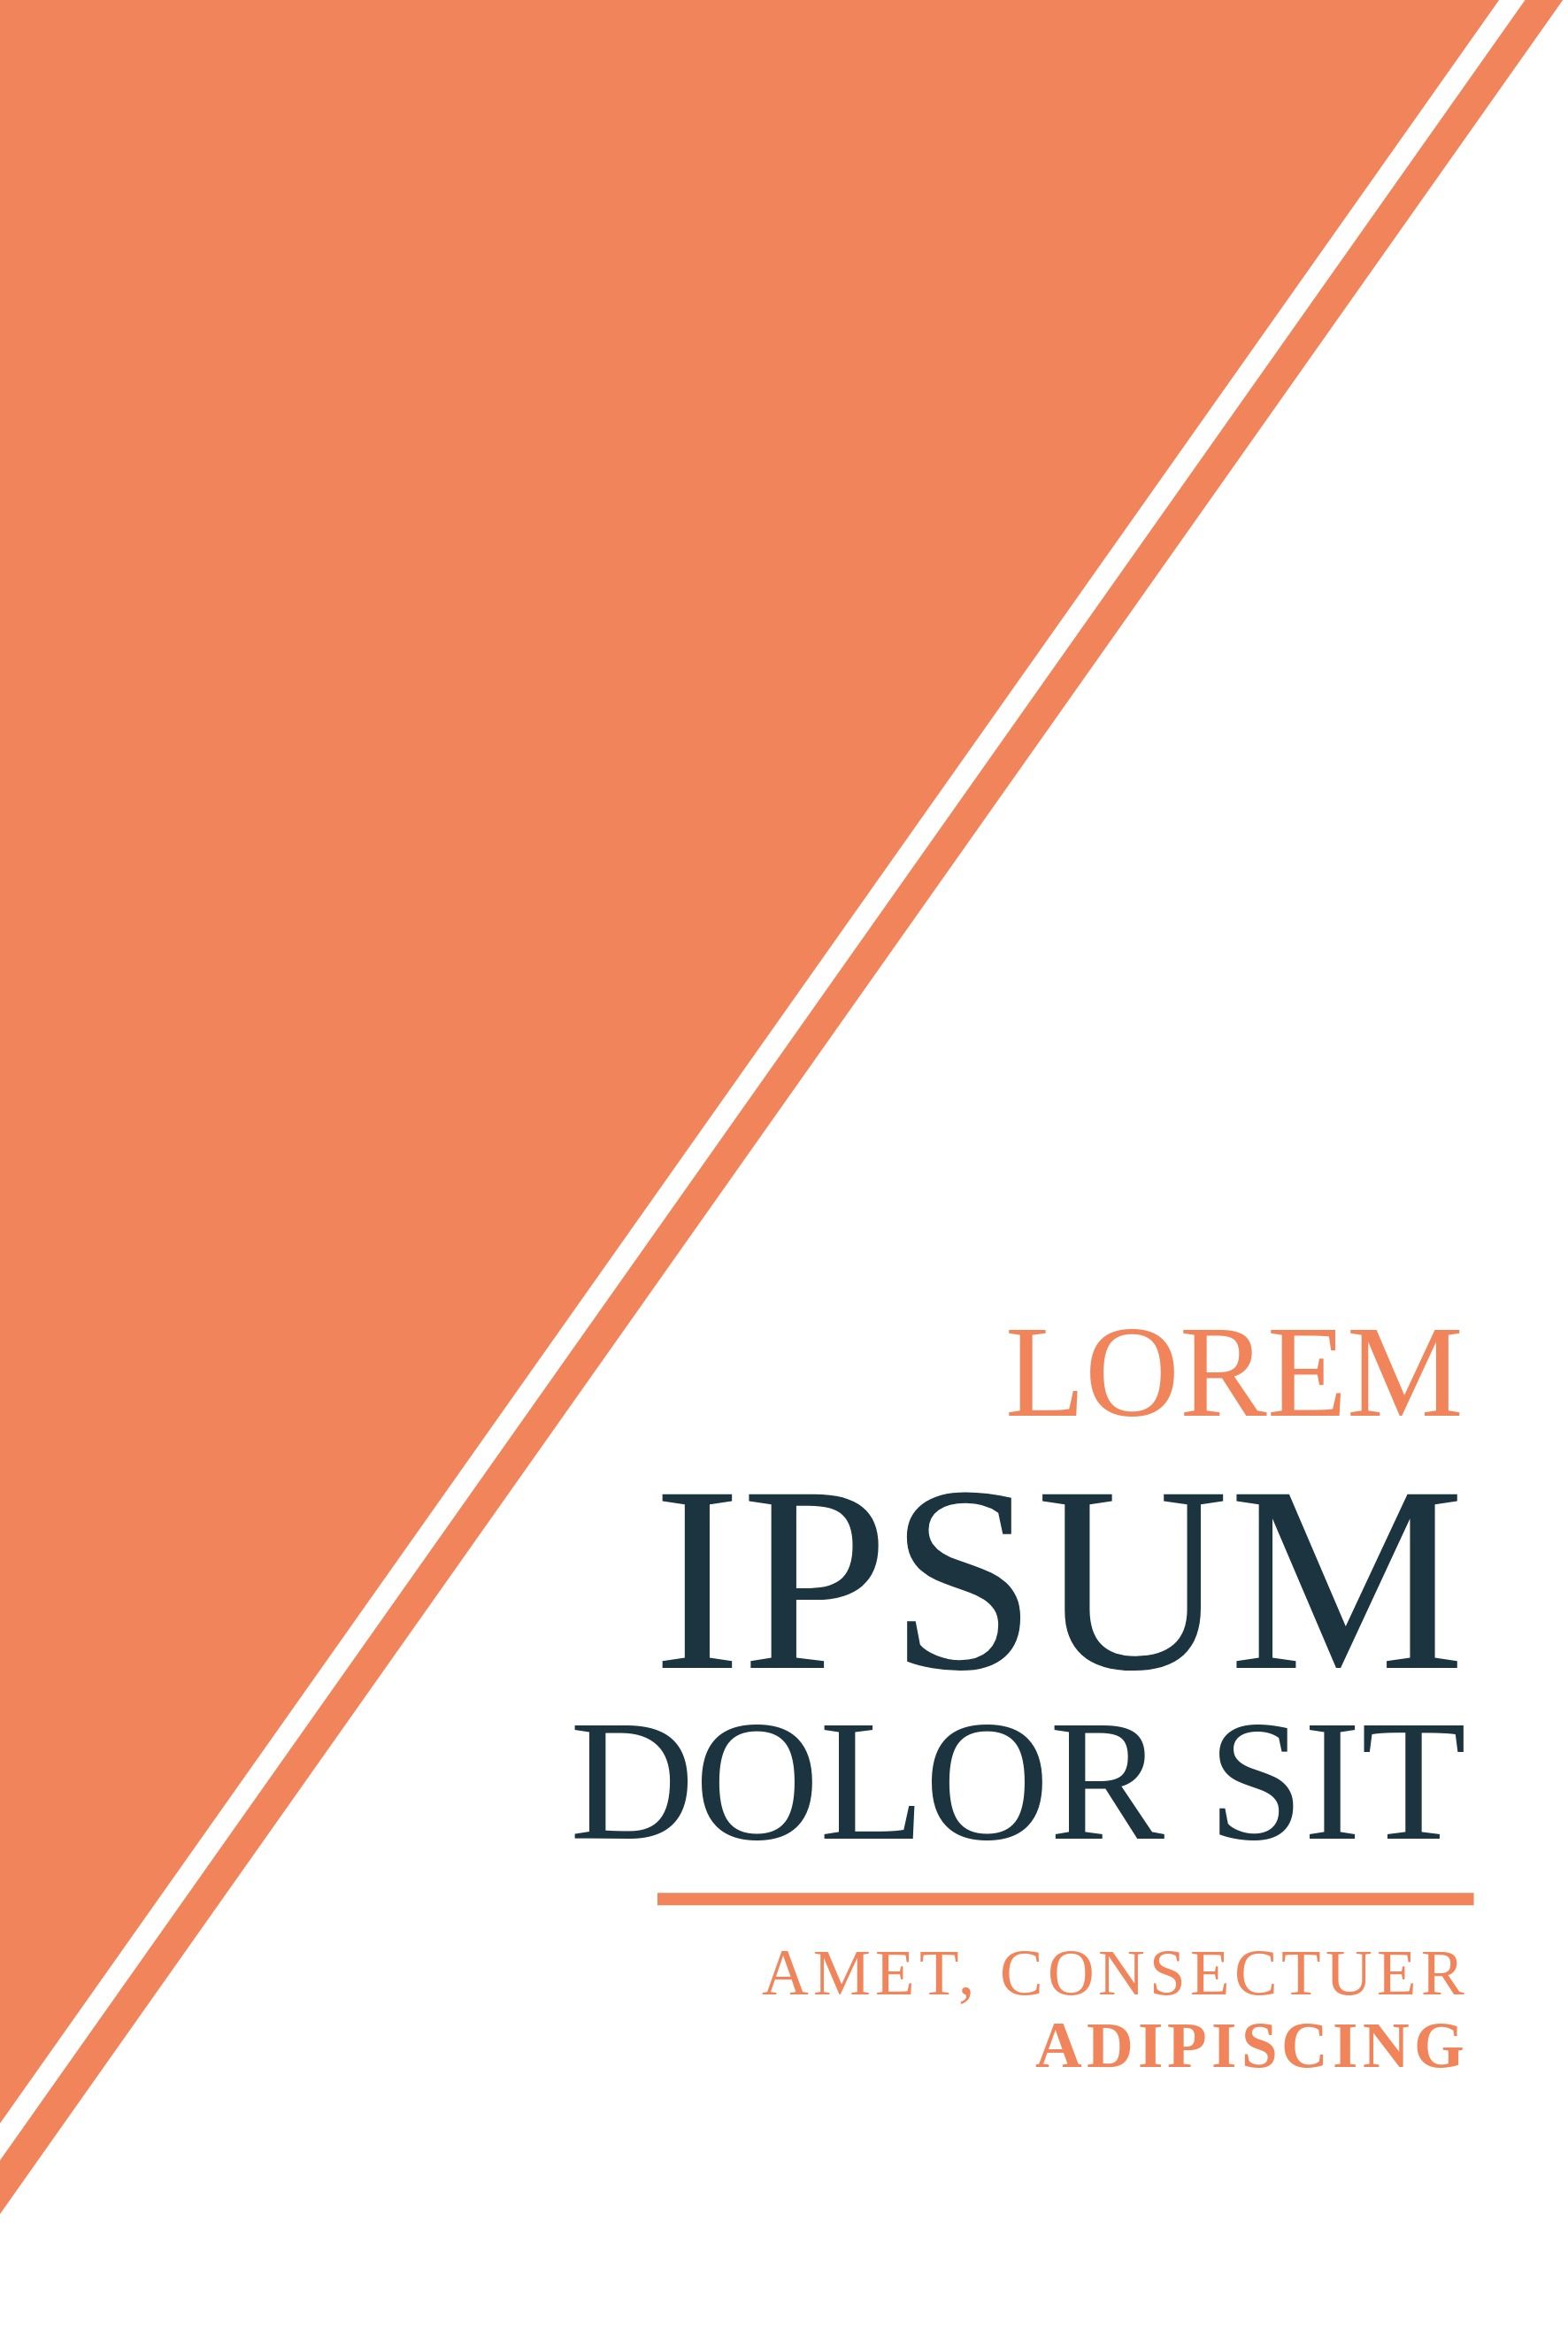 Modelo de capa de livro com texto lorem ipsum a ser editado